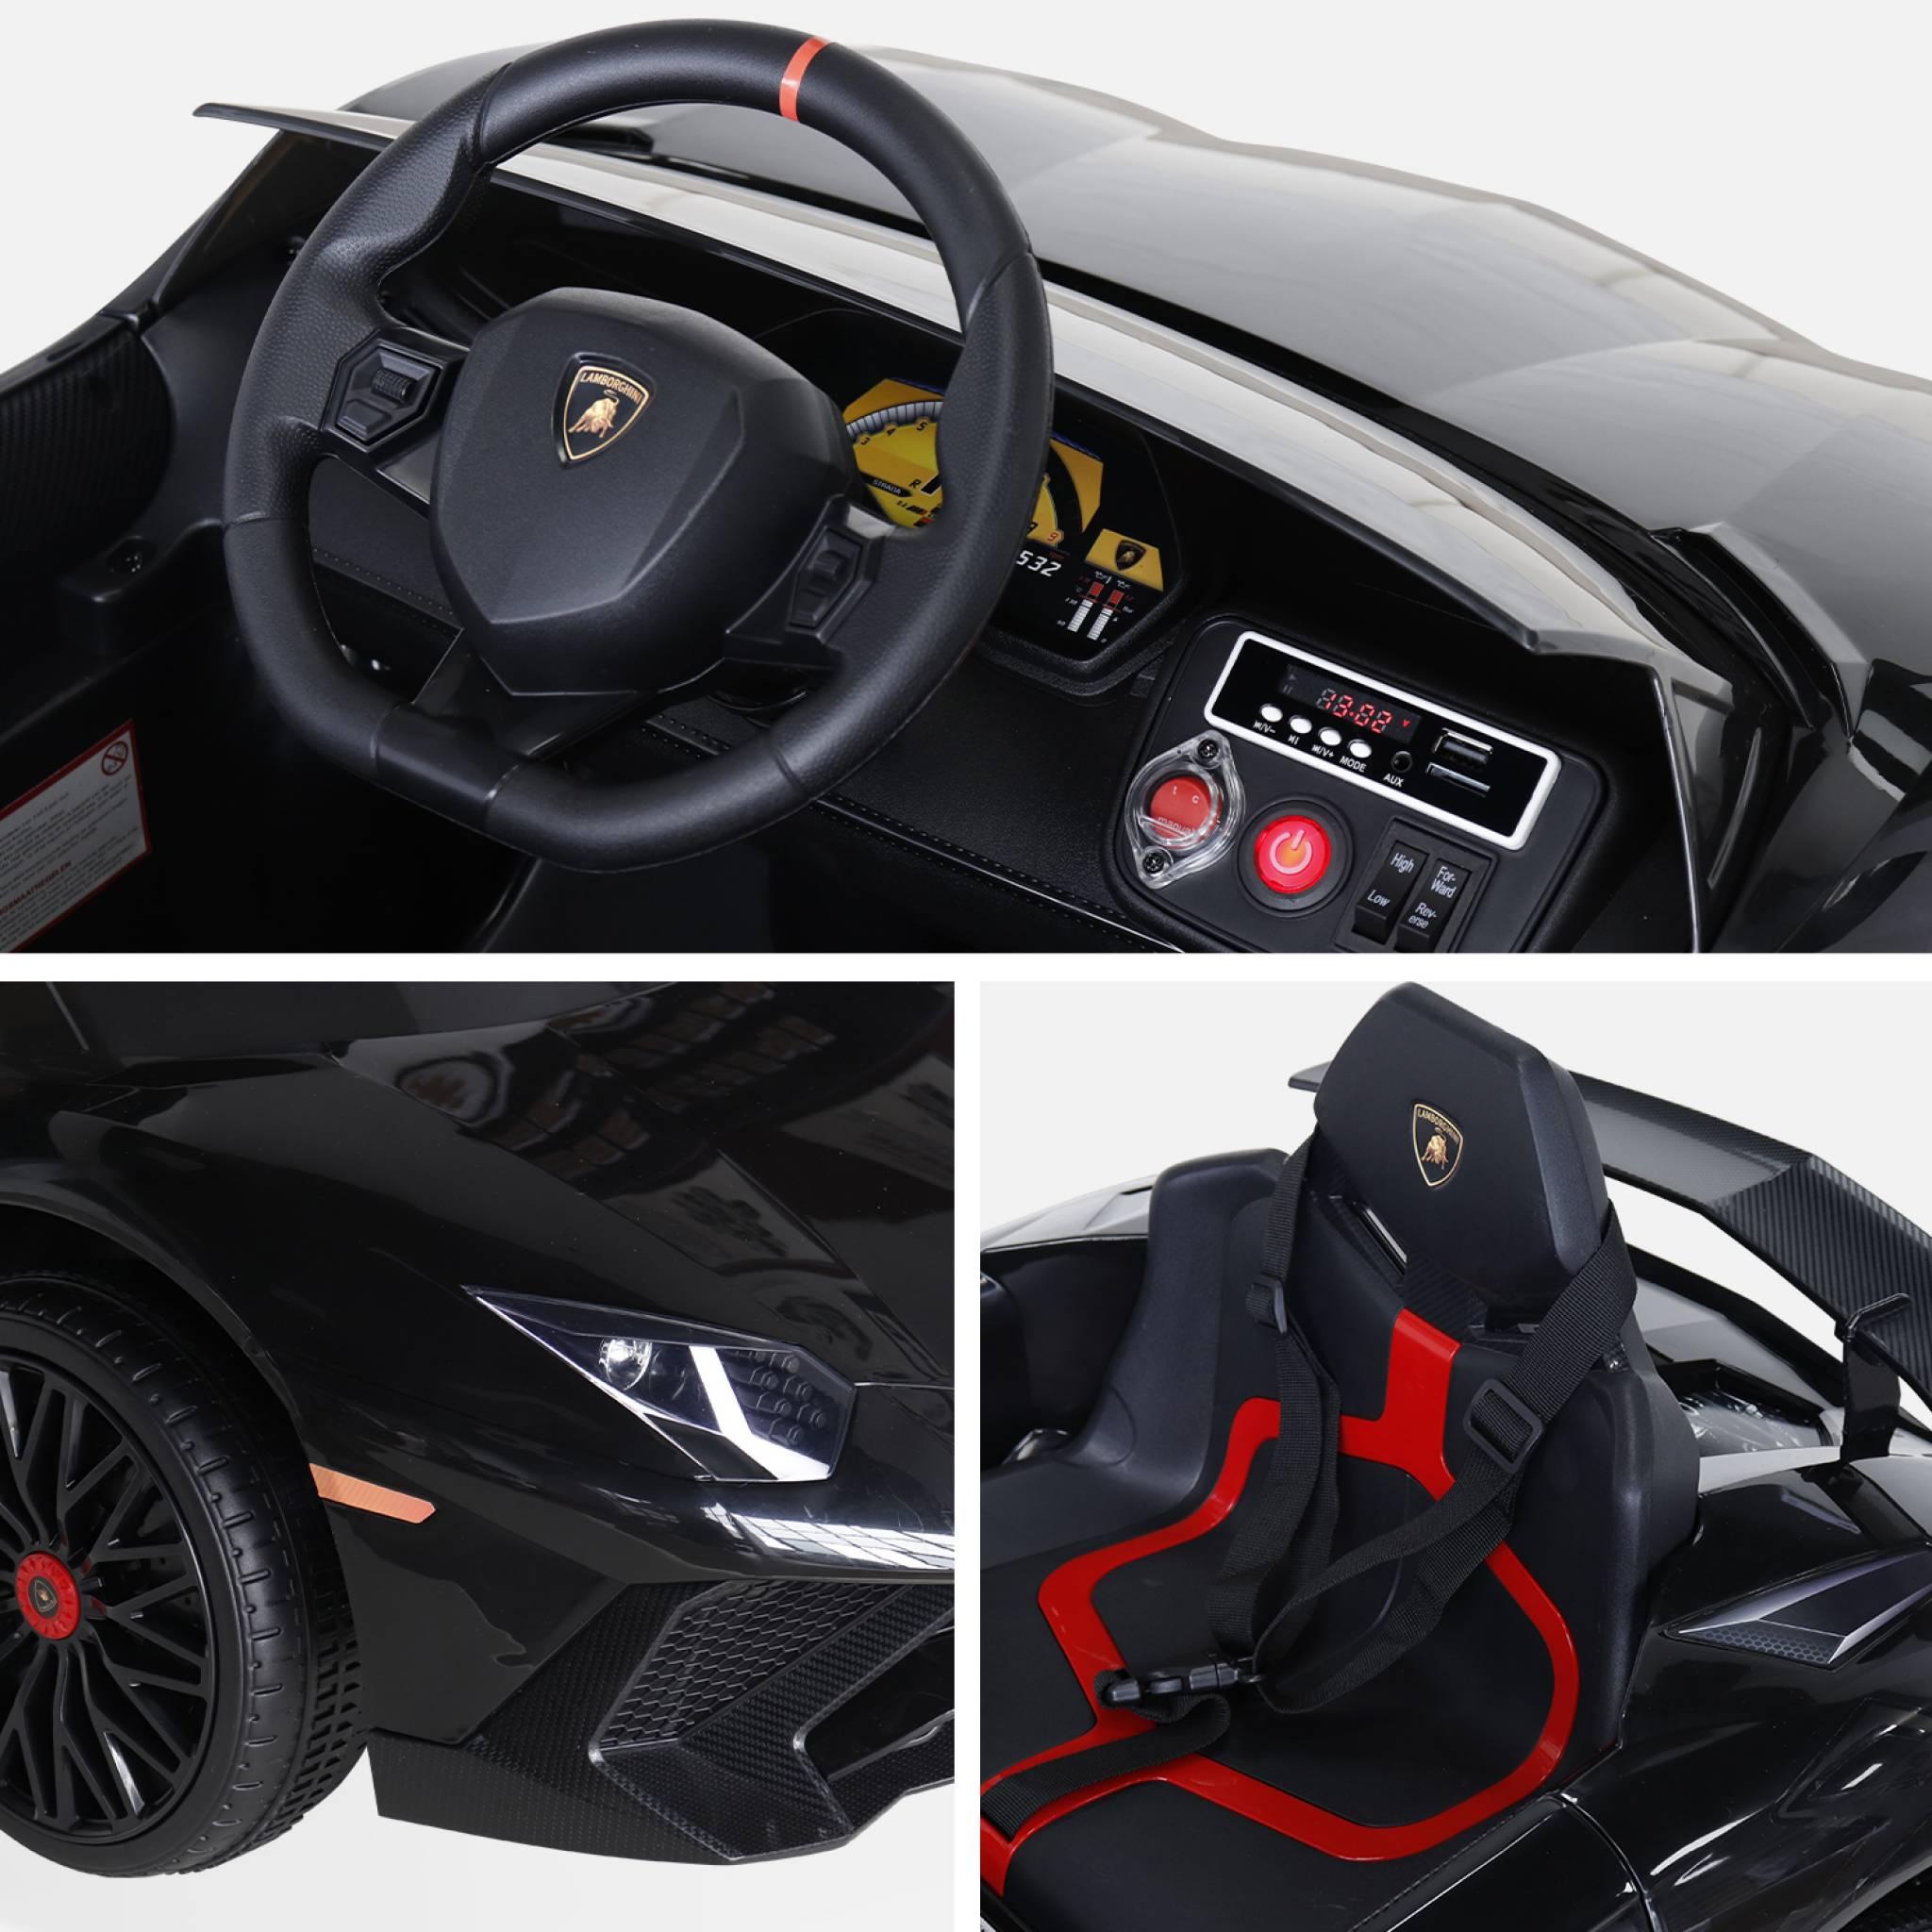 Lamborghini Aventador électrique, voiture électrique 2 places 12V